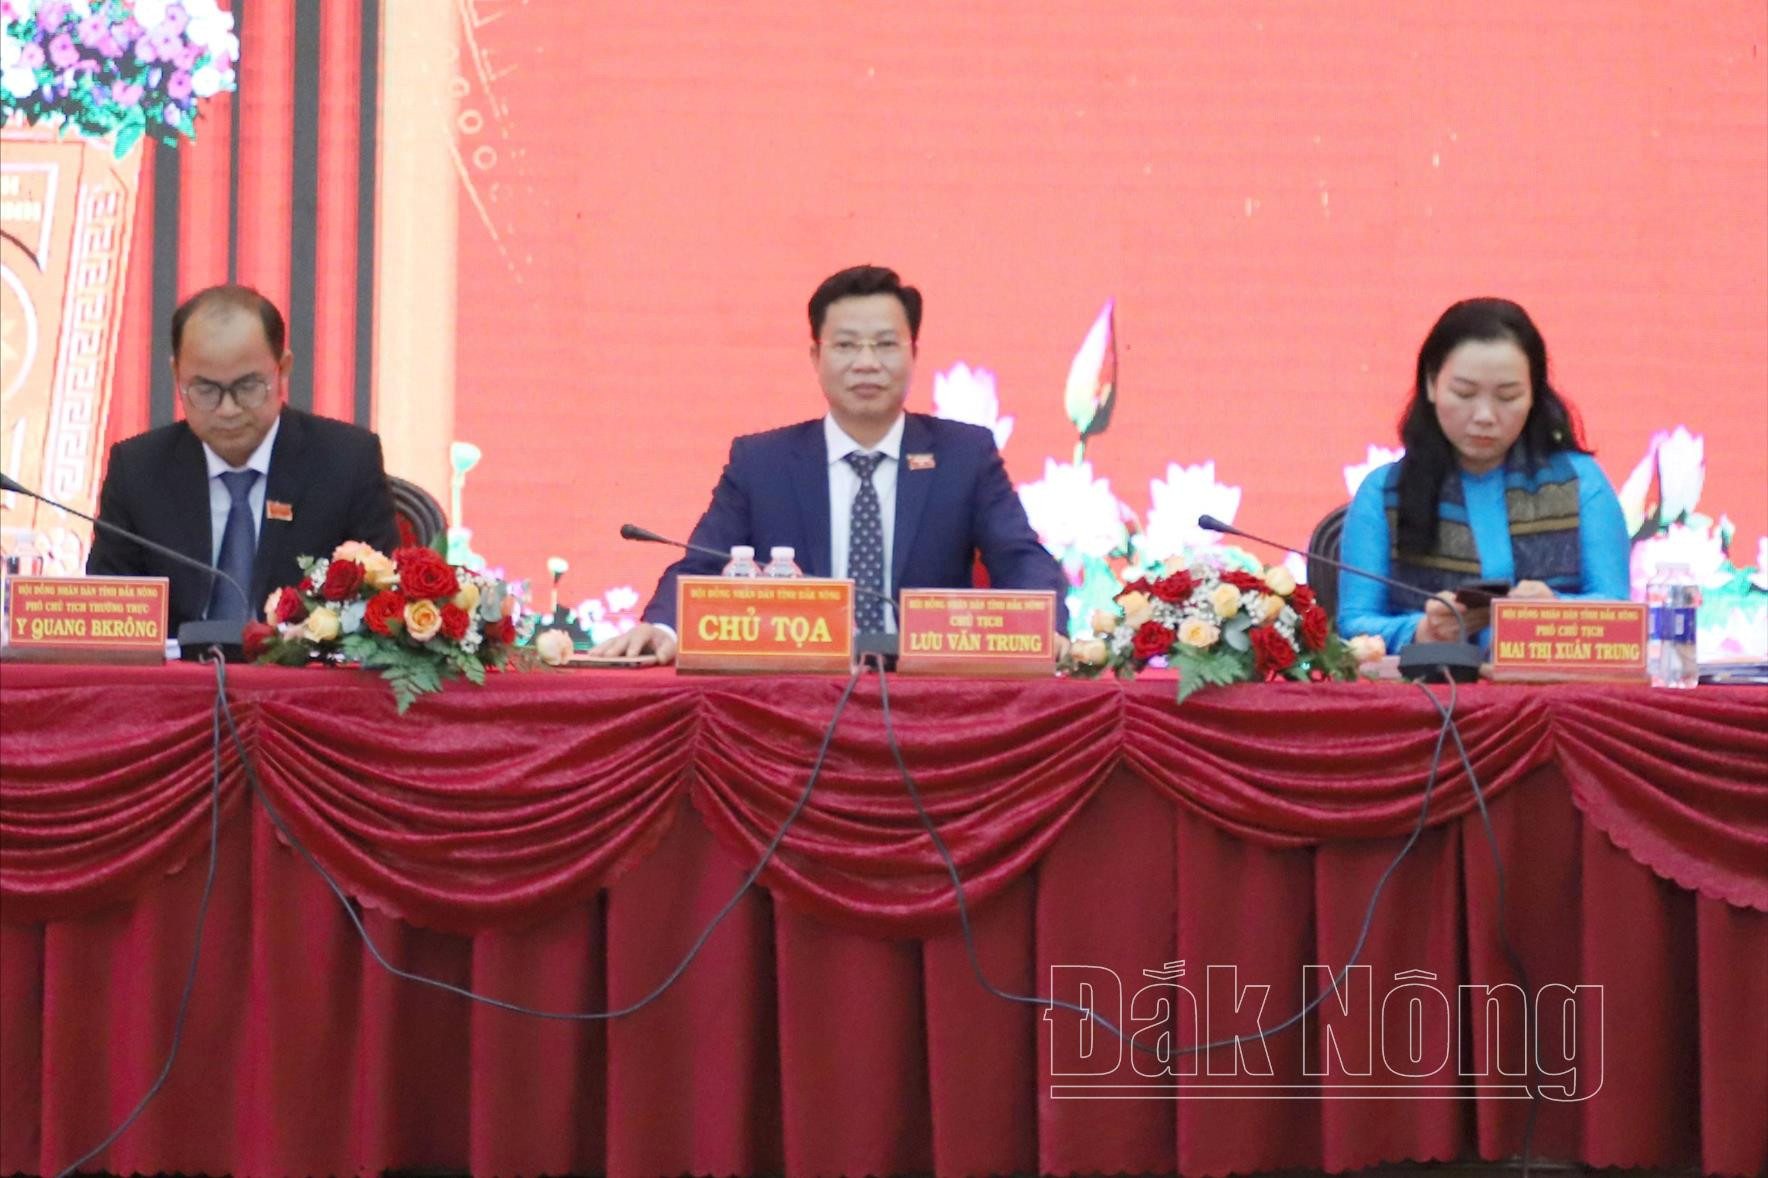 Đồng chí Lưu Văn Trung, Phó Bí thư Tỉnh ủy, Chủ tịch HĐND tỉnh và các Phó Chủ tịch HĐND tỉnh Đắk Nông chủ trì kỳ họp